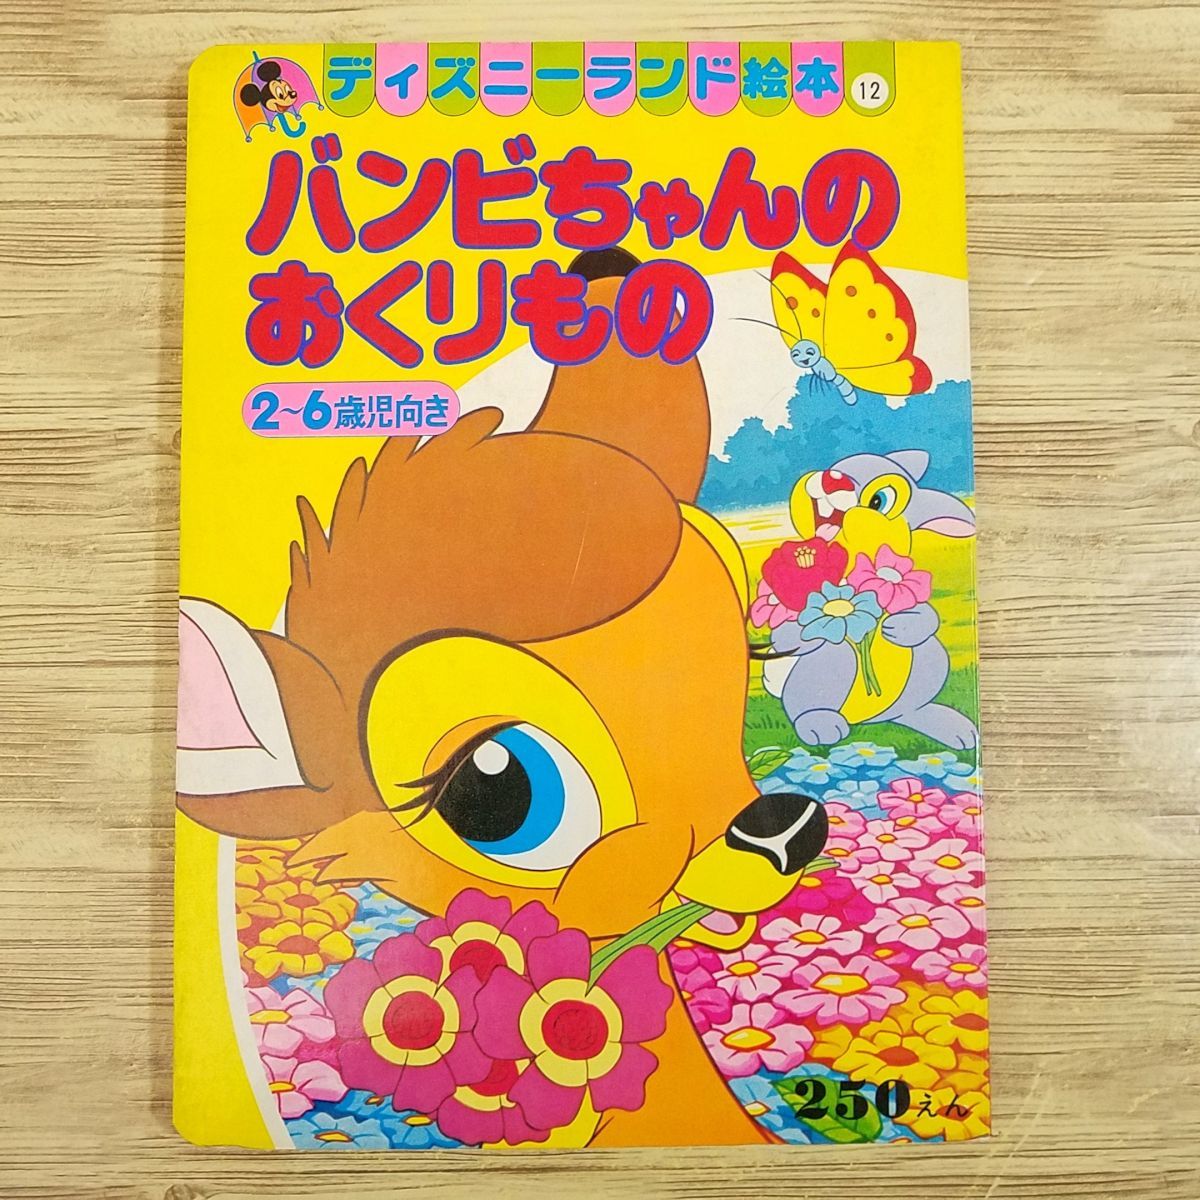  книга с картинками [ Disney Land книга с картинками Bambi Chan. ... было использовано ( Showa 54 год 10 месяц no. 2.)] Disney книга с картинками retro книга с картинками 